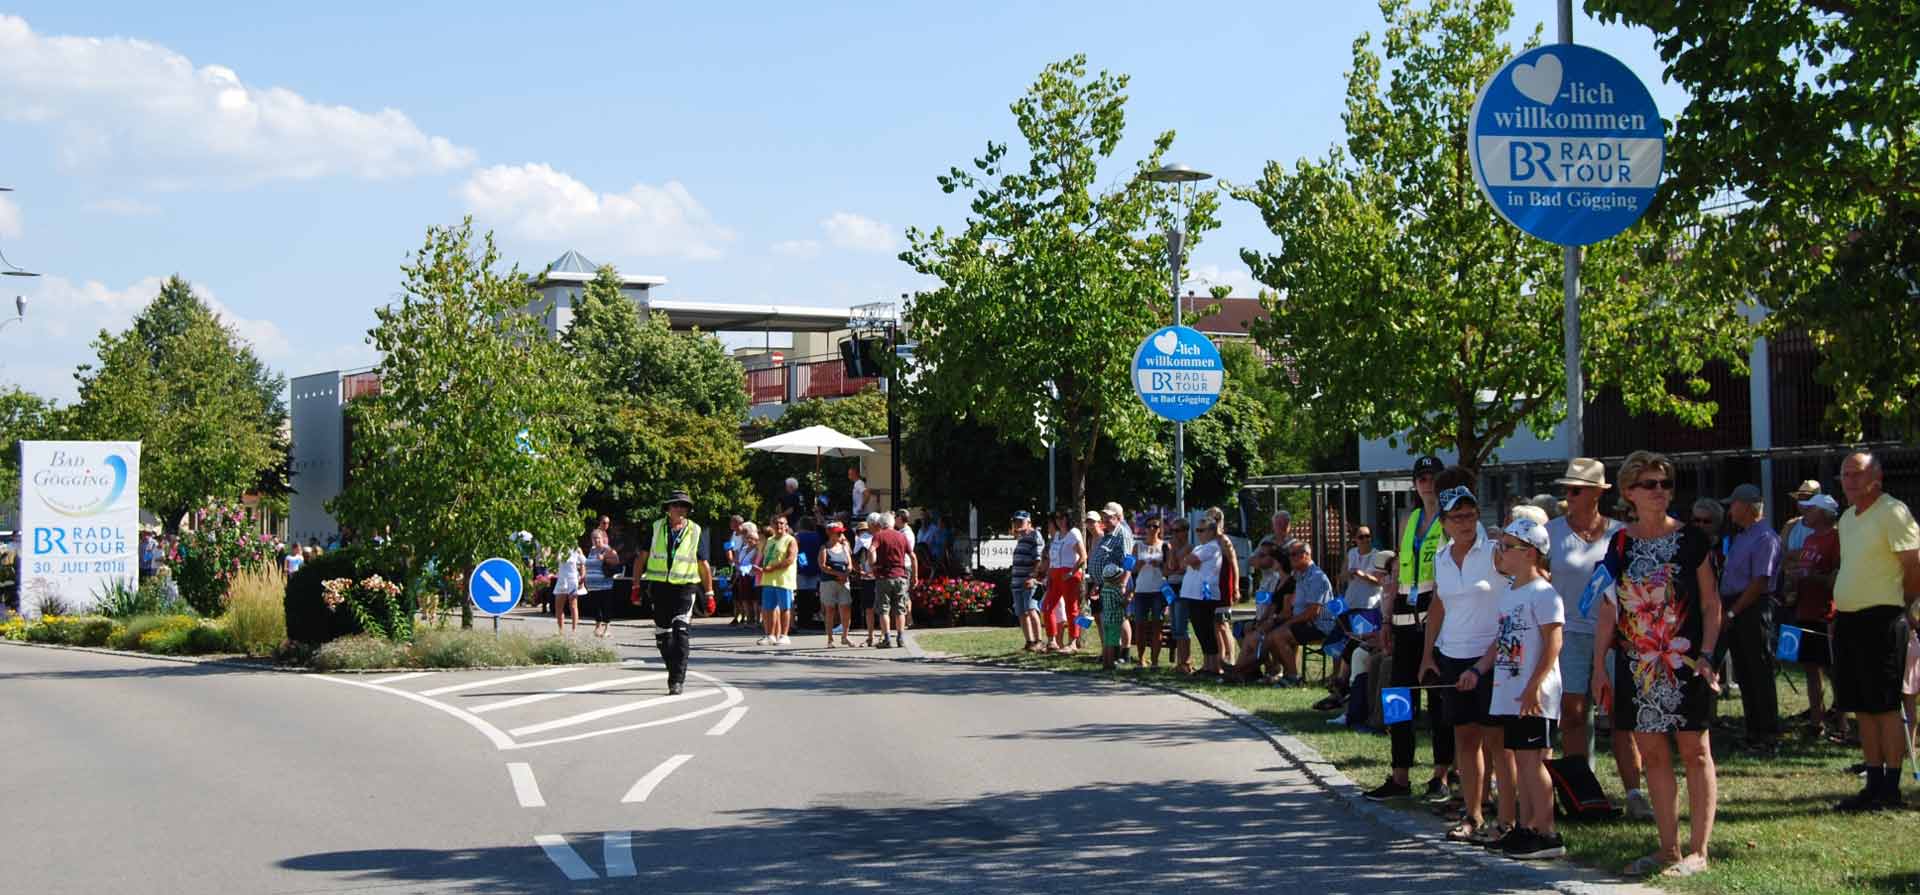 Mit Logos, Bannern und zahlreichen Zuschauern wurden die Radler der BR-Radltour in Bad Gögging öffentlichkeitswirksam begrüßt. (Foto: Zitzelsberger)